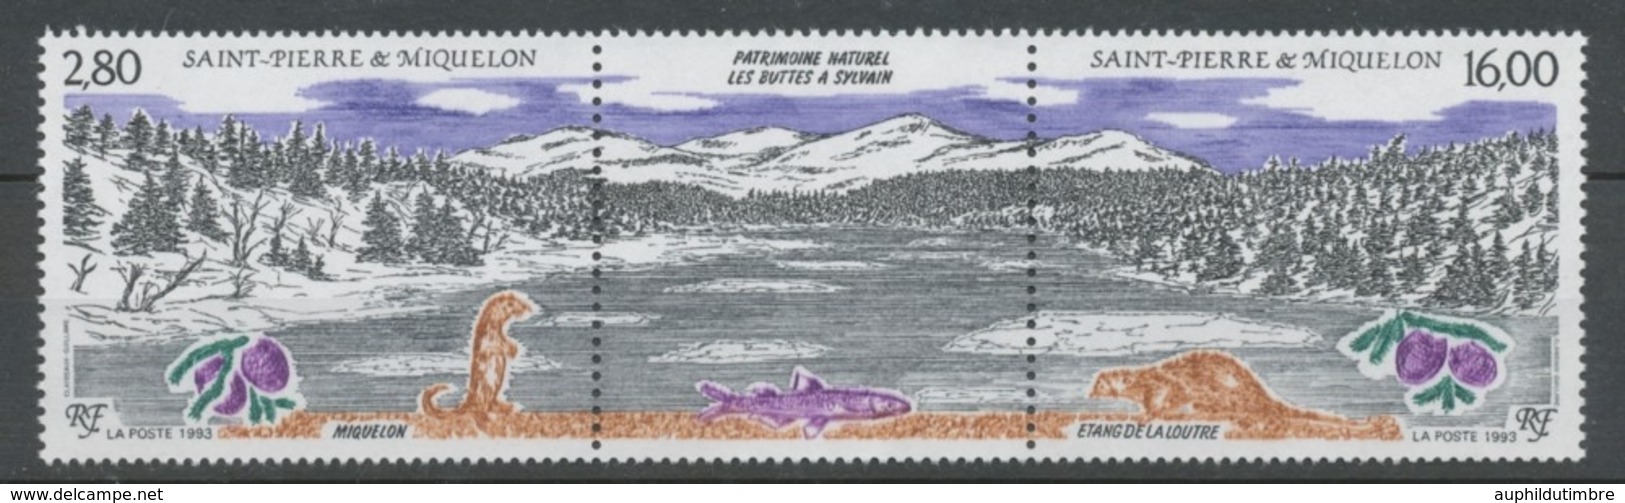 SPM  N°586A Patrimoine Naturel Des Iles St-Pierre-et-Miquelon Le Triptyque Avec Vignette Centrale ZC586A - Unused Stamps